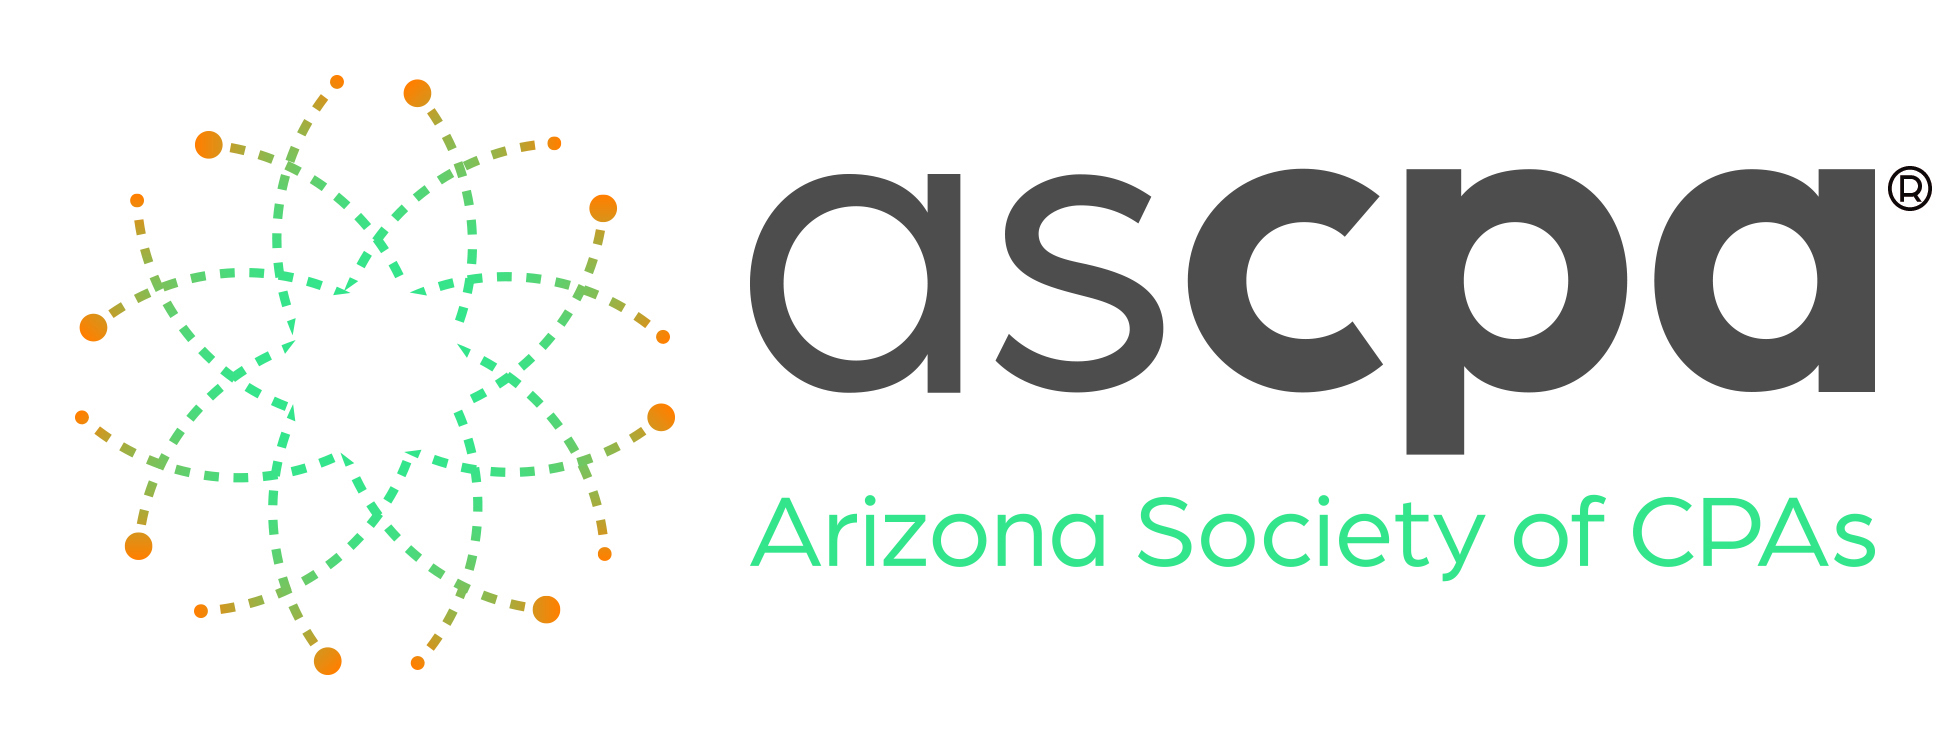 Arizona Society of CPAs logo